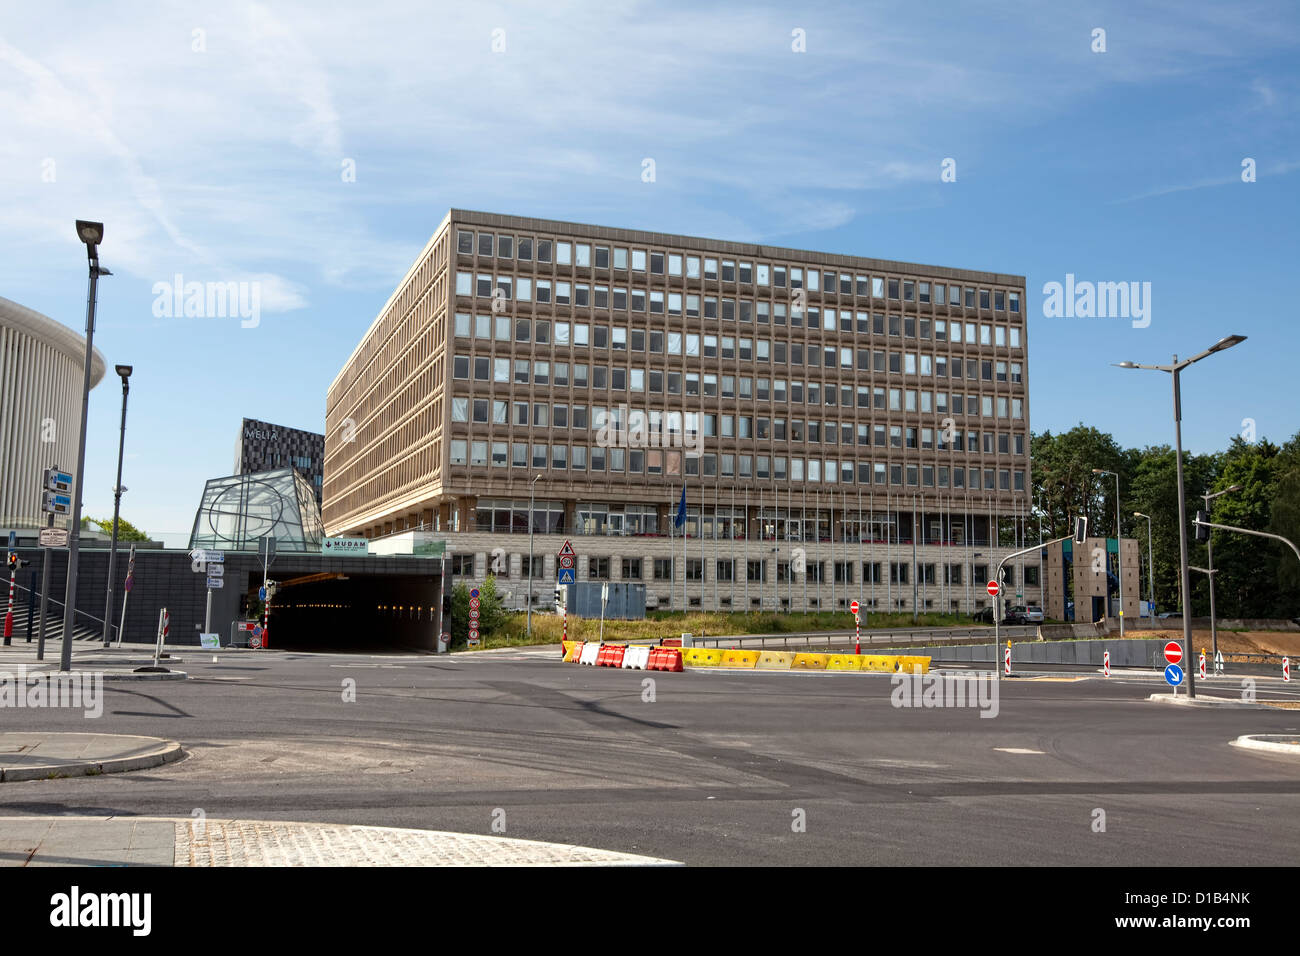 Robert Schuman building, European Parliament, Place de l’Europe, Kirchberg, Luxembourg, Europe Stock Photo